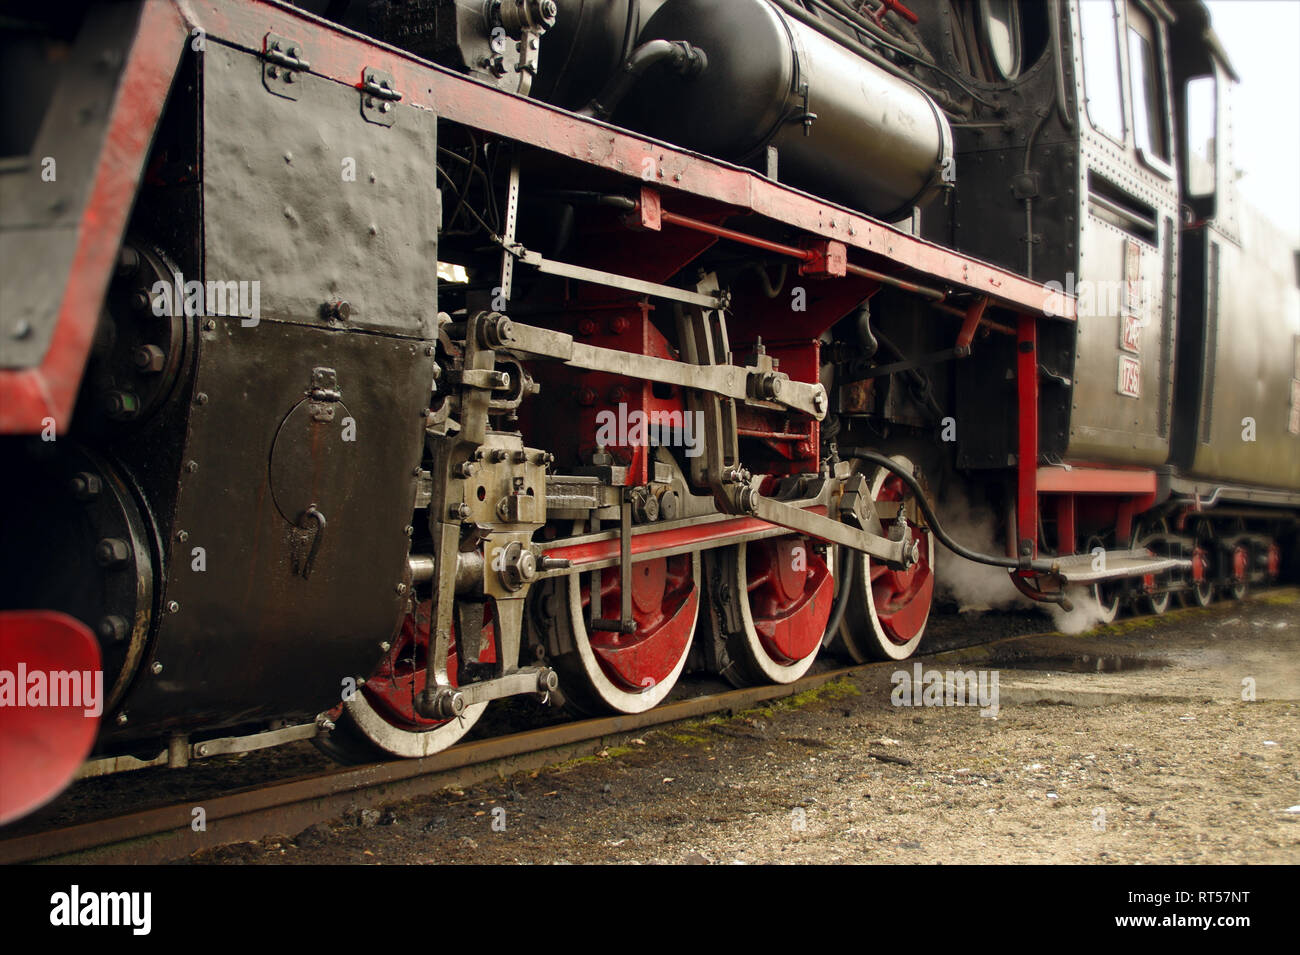 Les roues de la locomotive à vapeur. Fermer la vue de train rétro. Banque D'Images